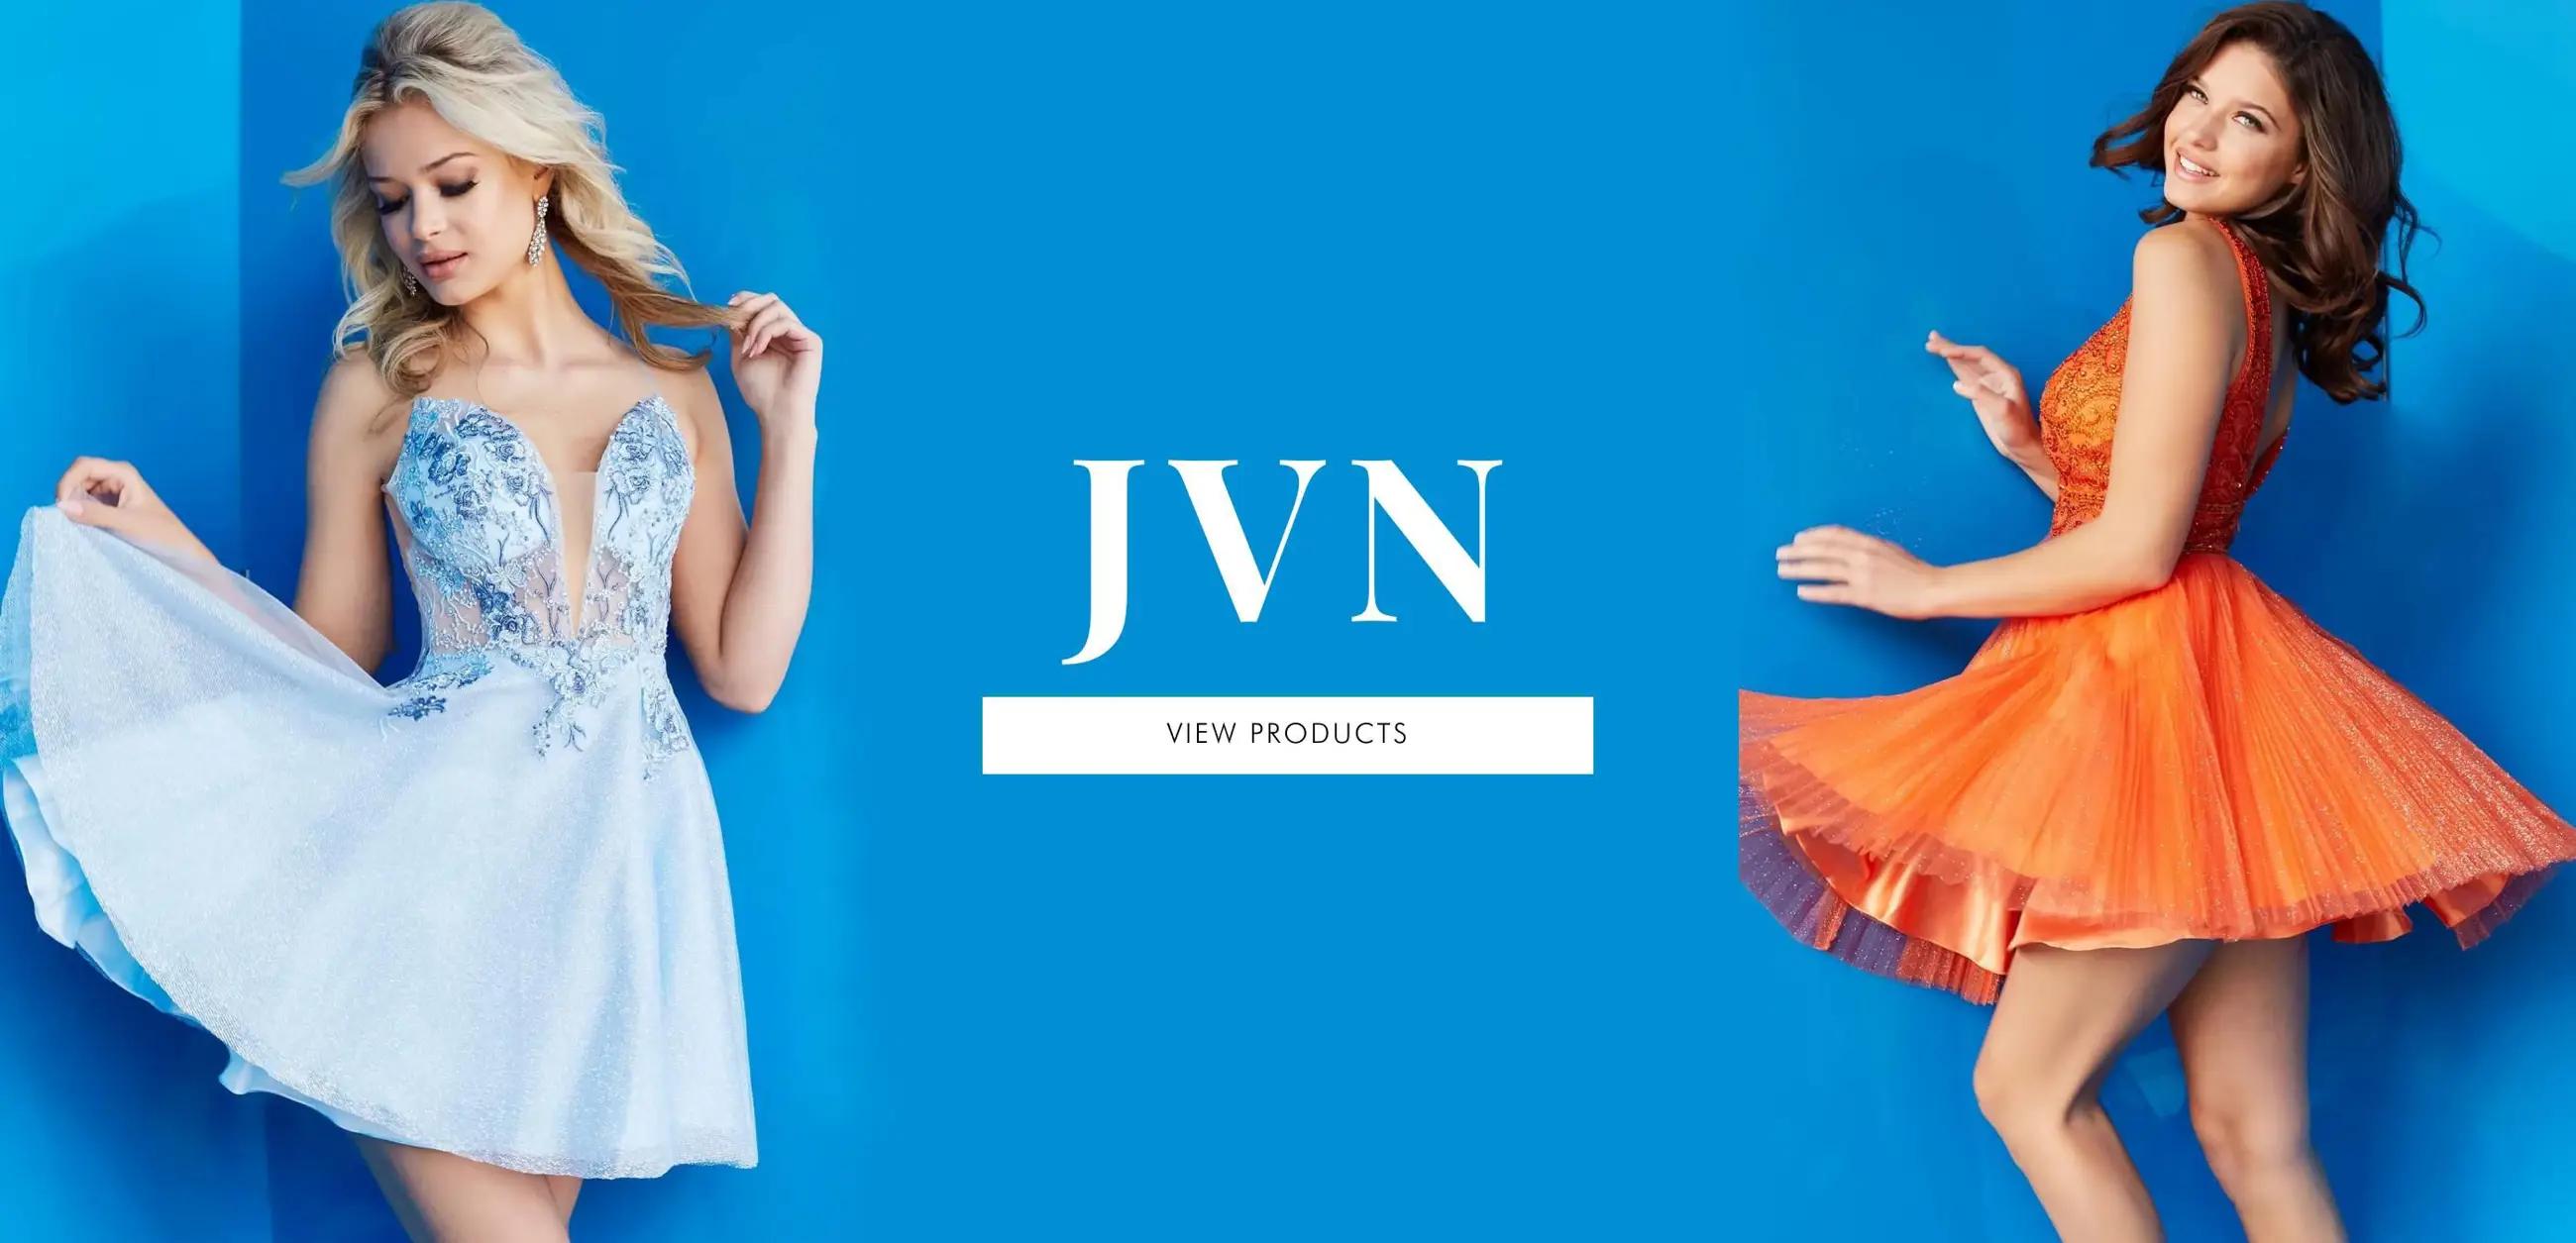 Hermz Boutique JVN banner desktop